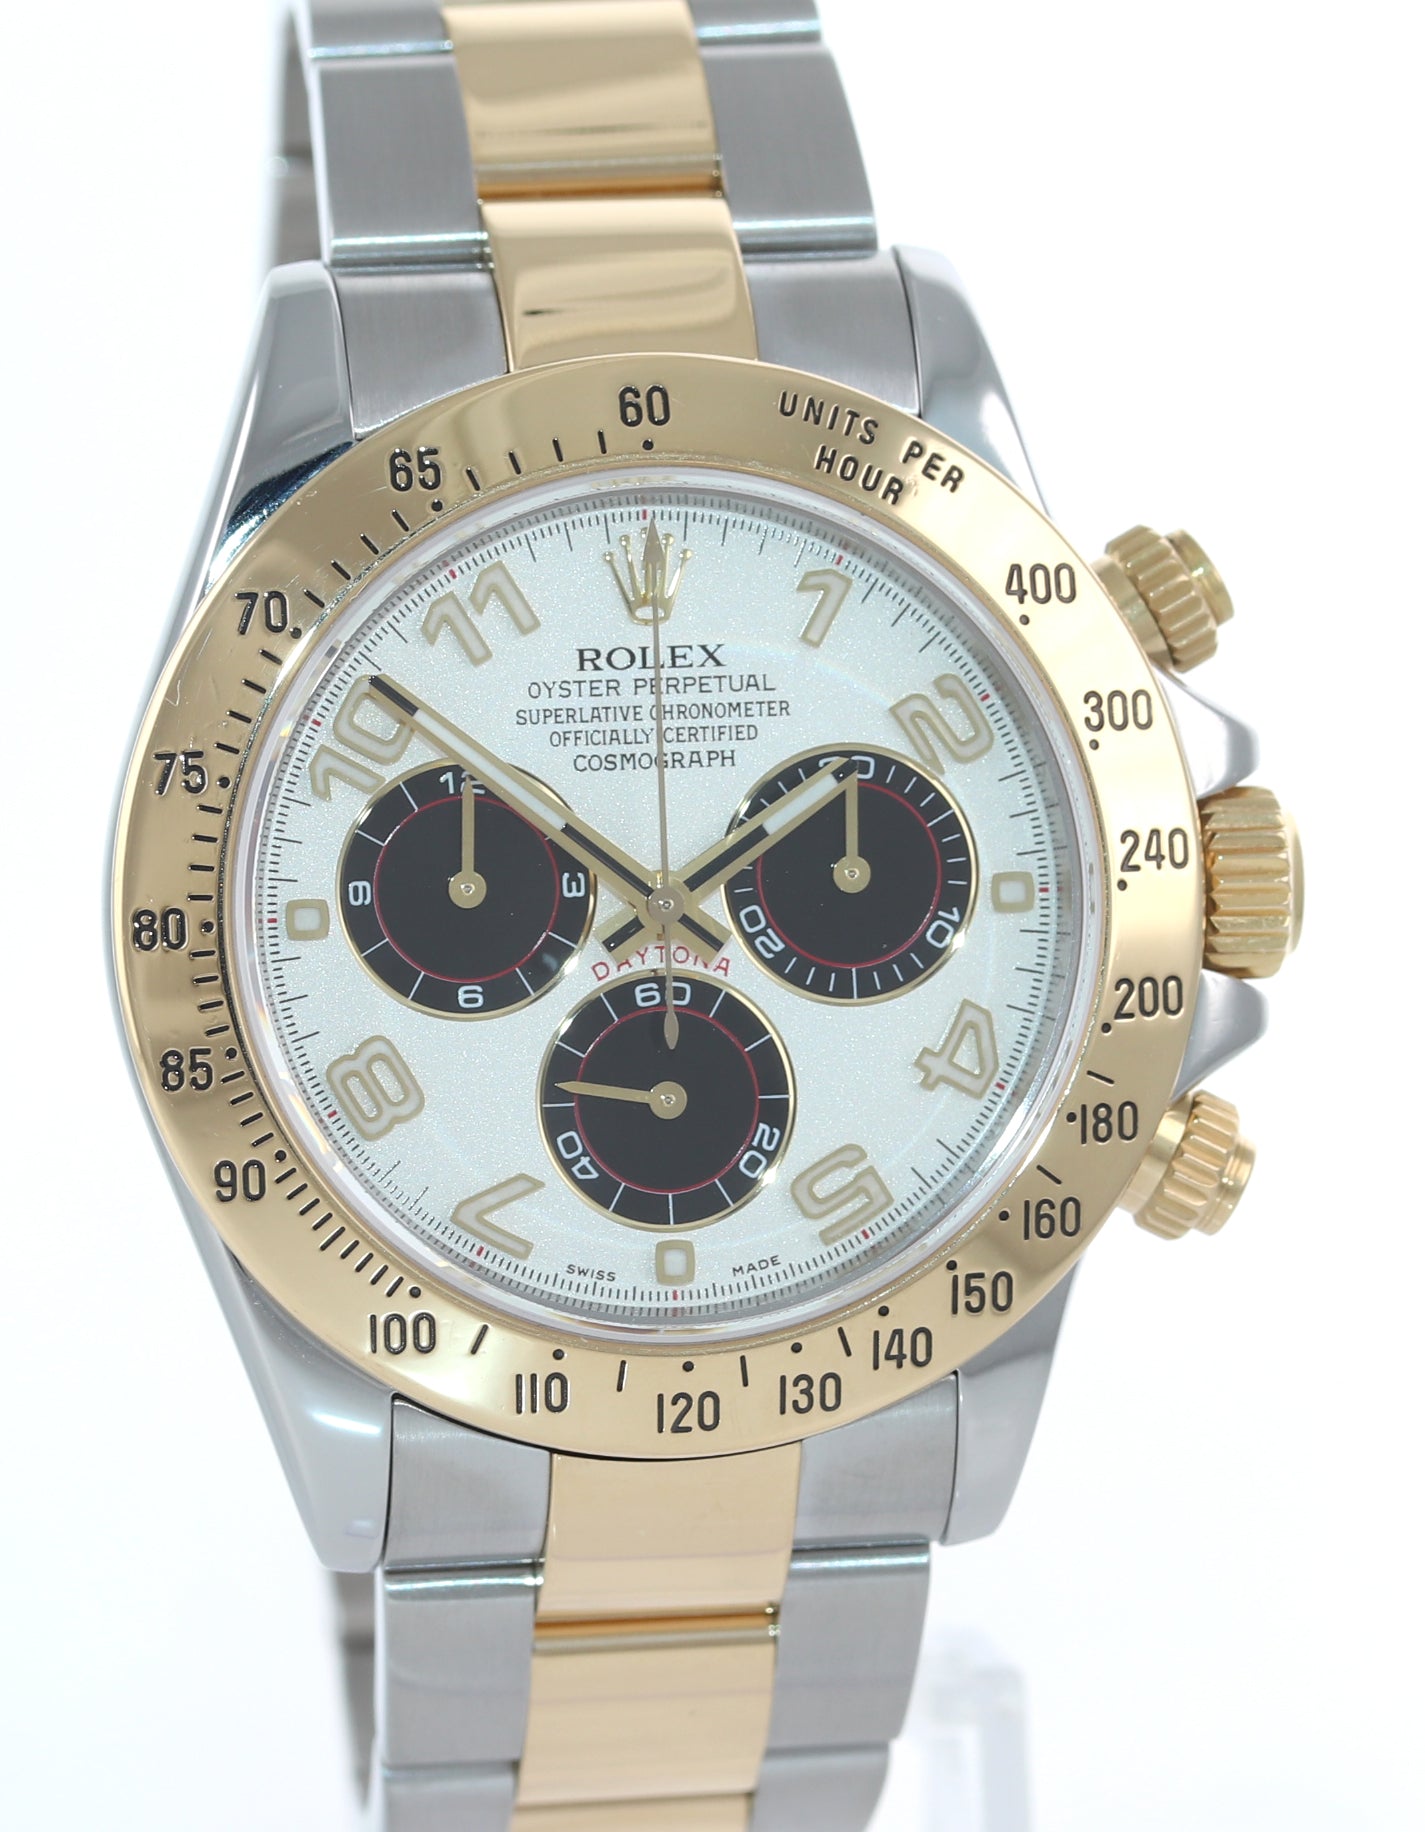 RARE Rolex Daytona 116523 White Panda 18k Yellow Gold Two Tone Watch REHAUT